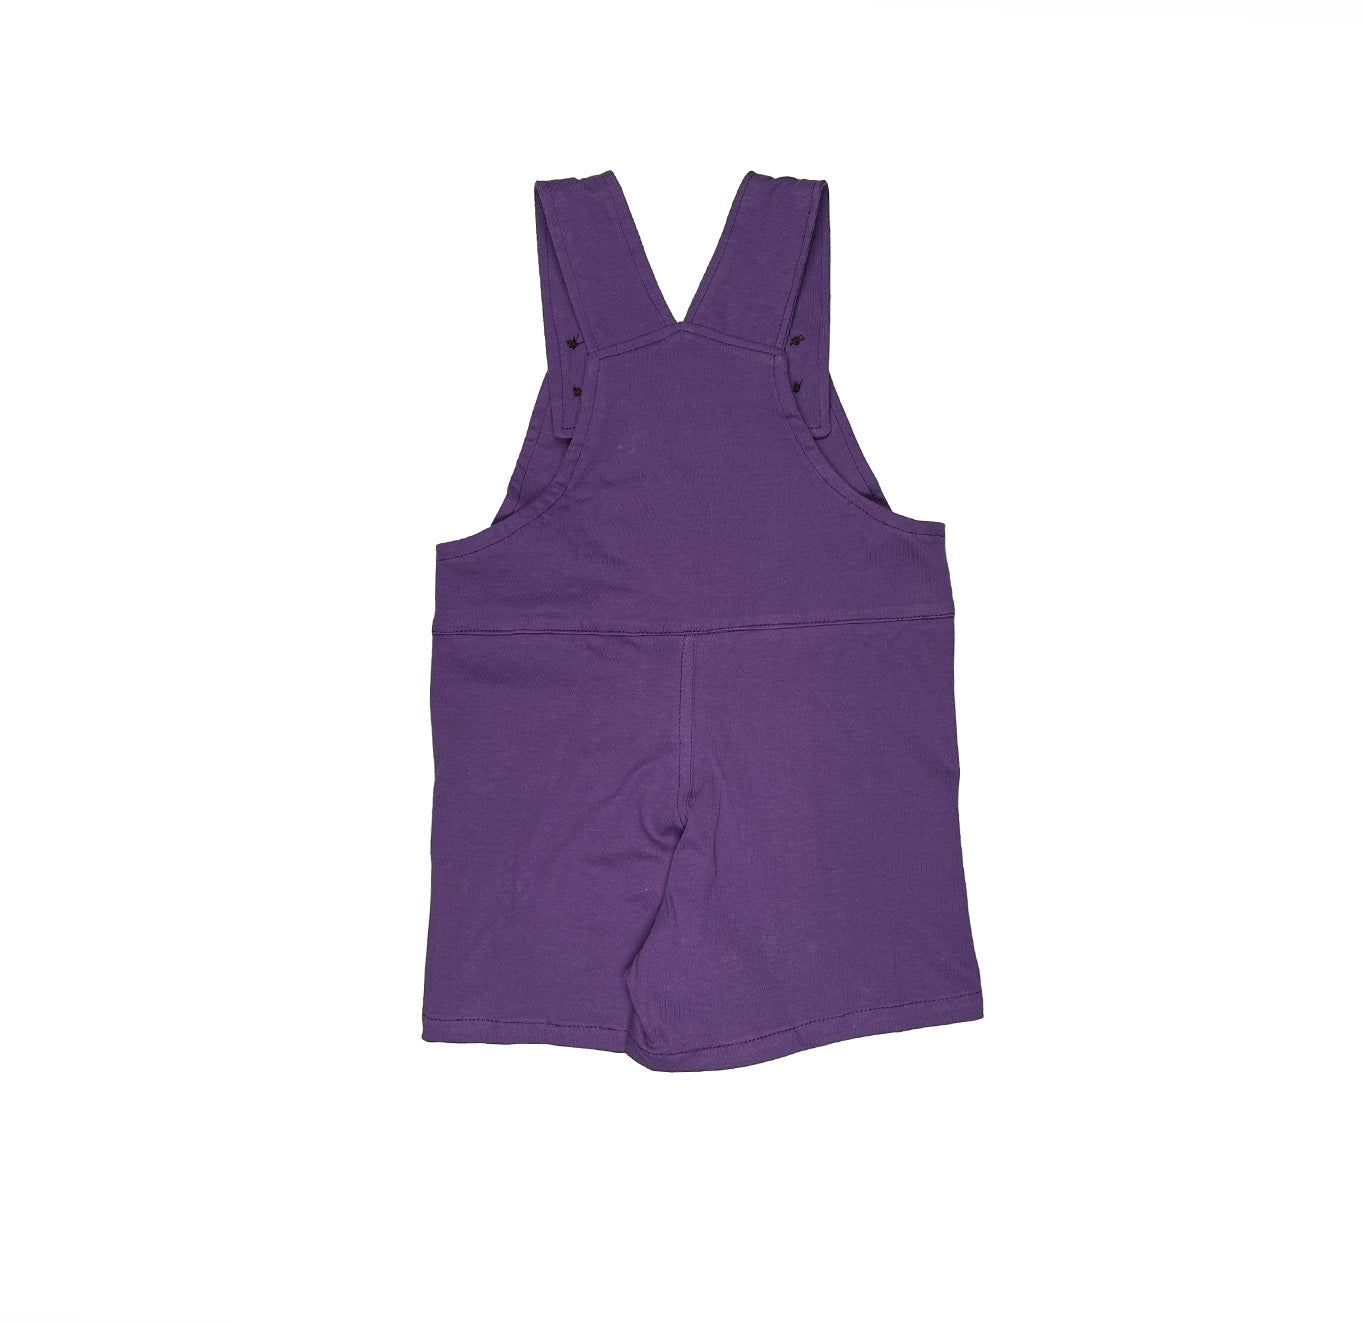 Plain Purple Short Overall for Girls